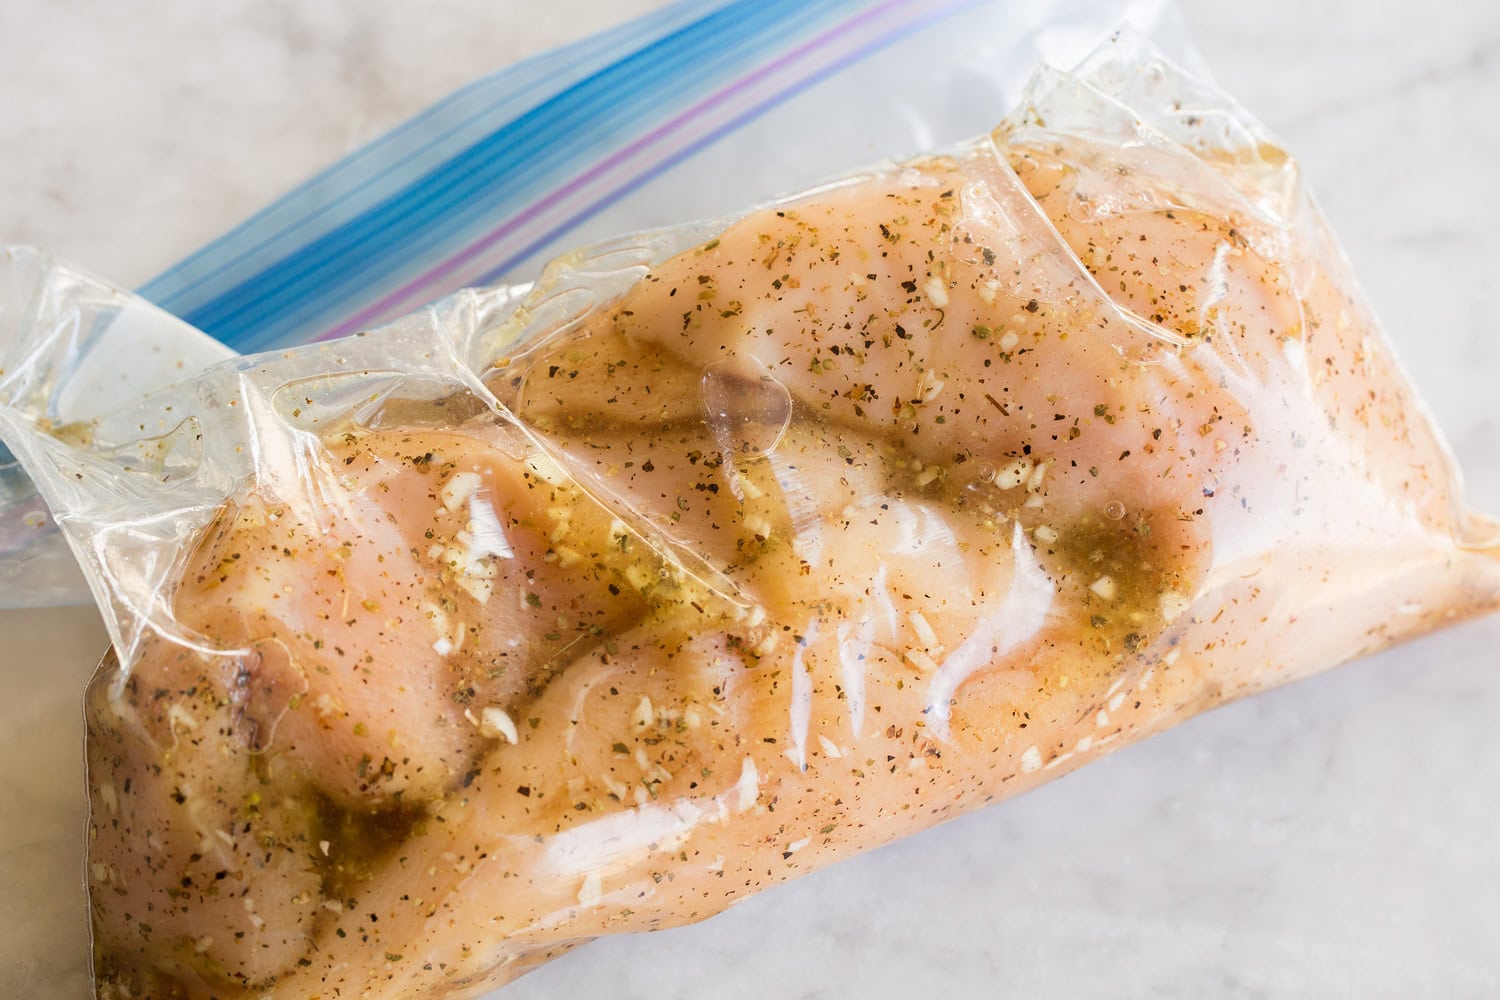 Chicken soaking in marinade in ziplock bag.